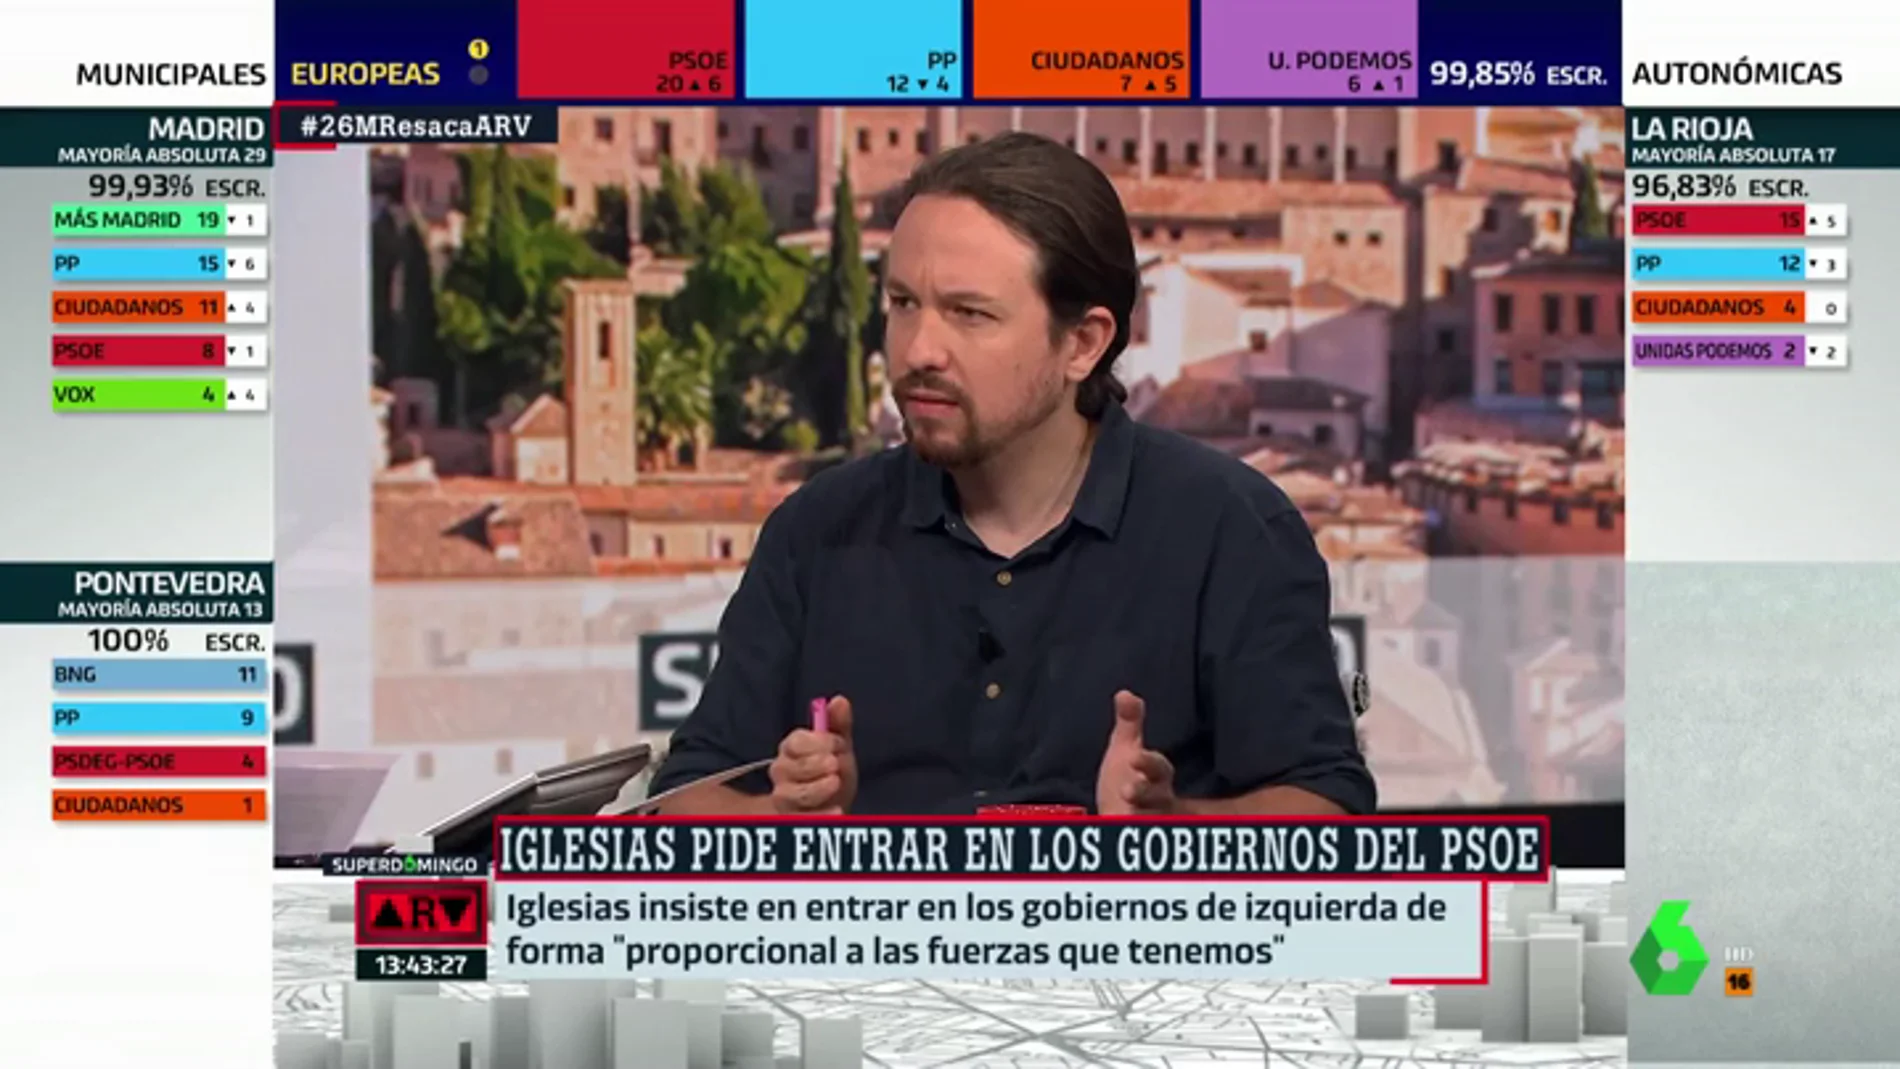 Pablo Iglesias: "Sumando los votos de Madrid en Pie con Mas Madrid y PSOE no hubiera sido suficiente para frenar a la derecha"